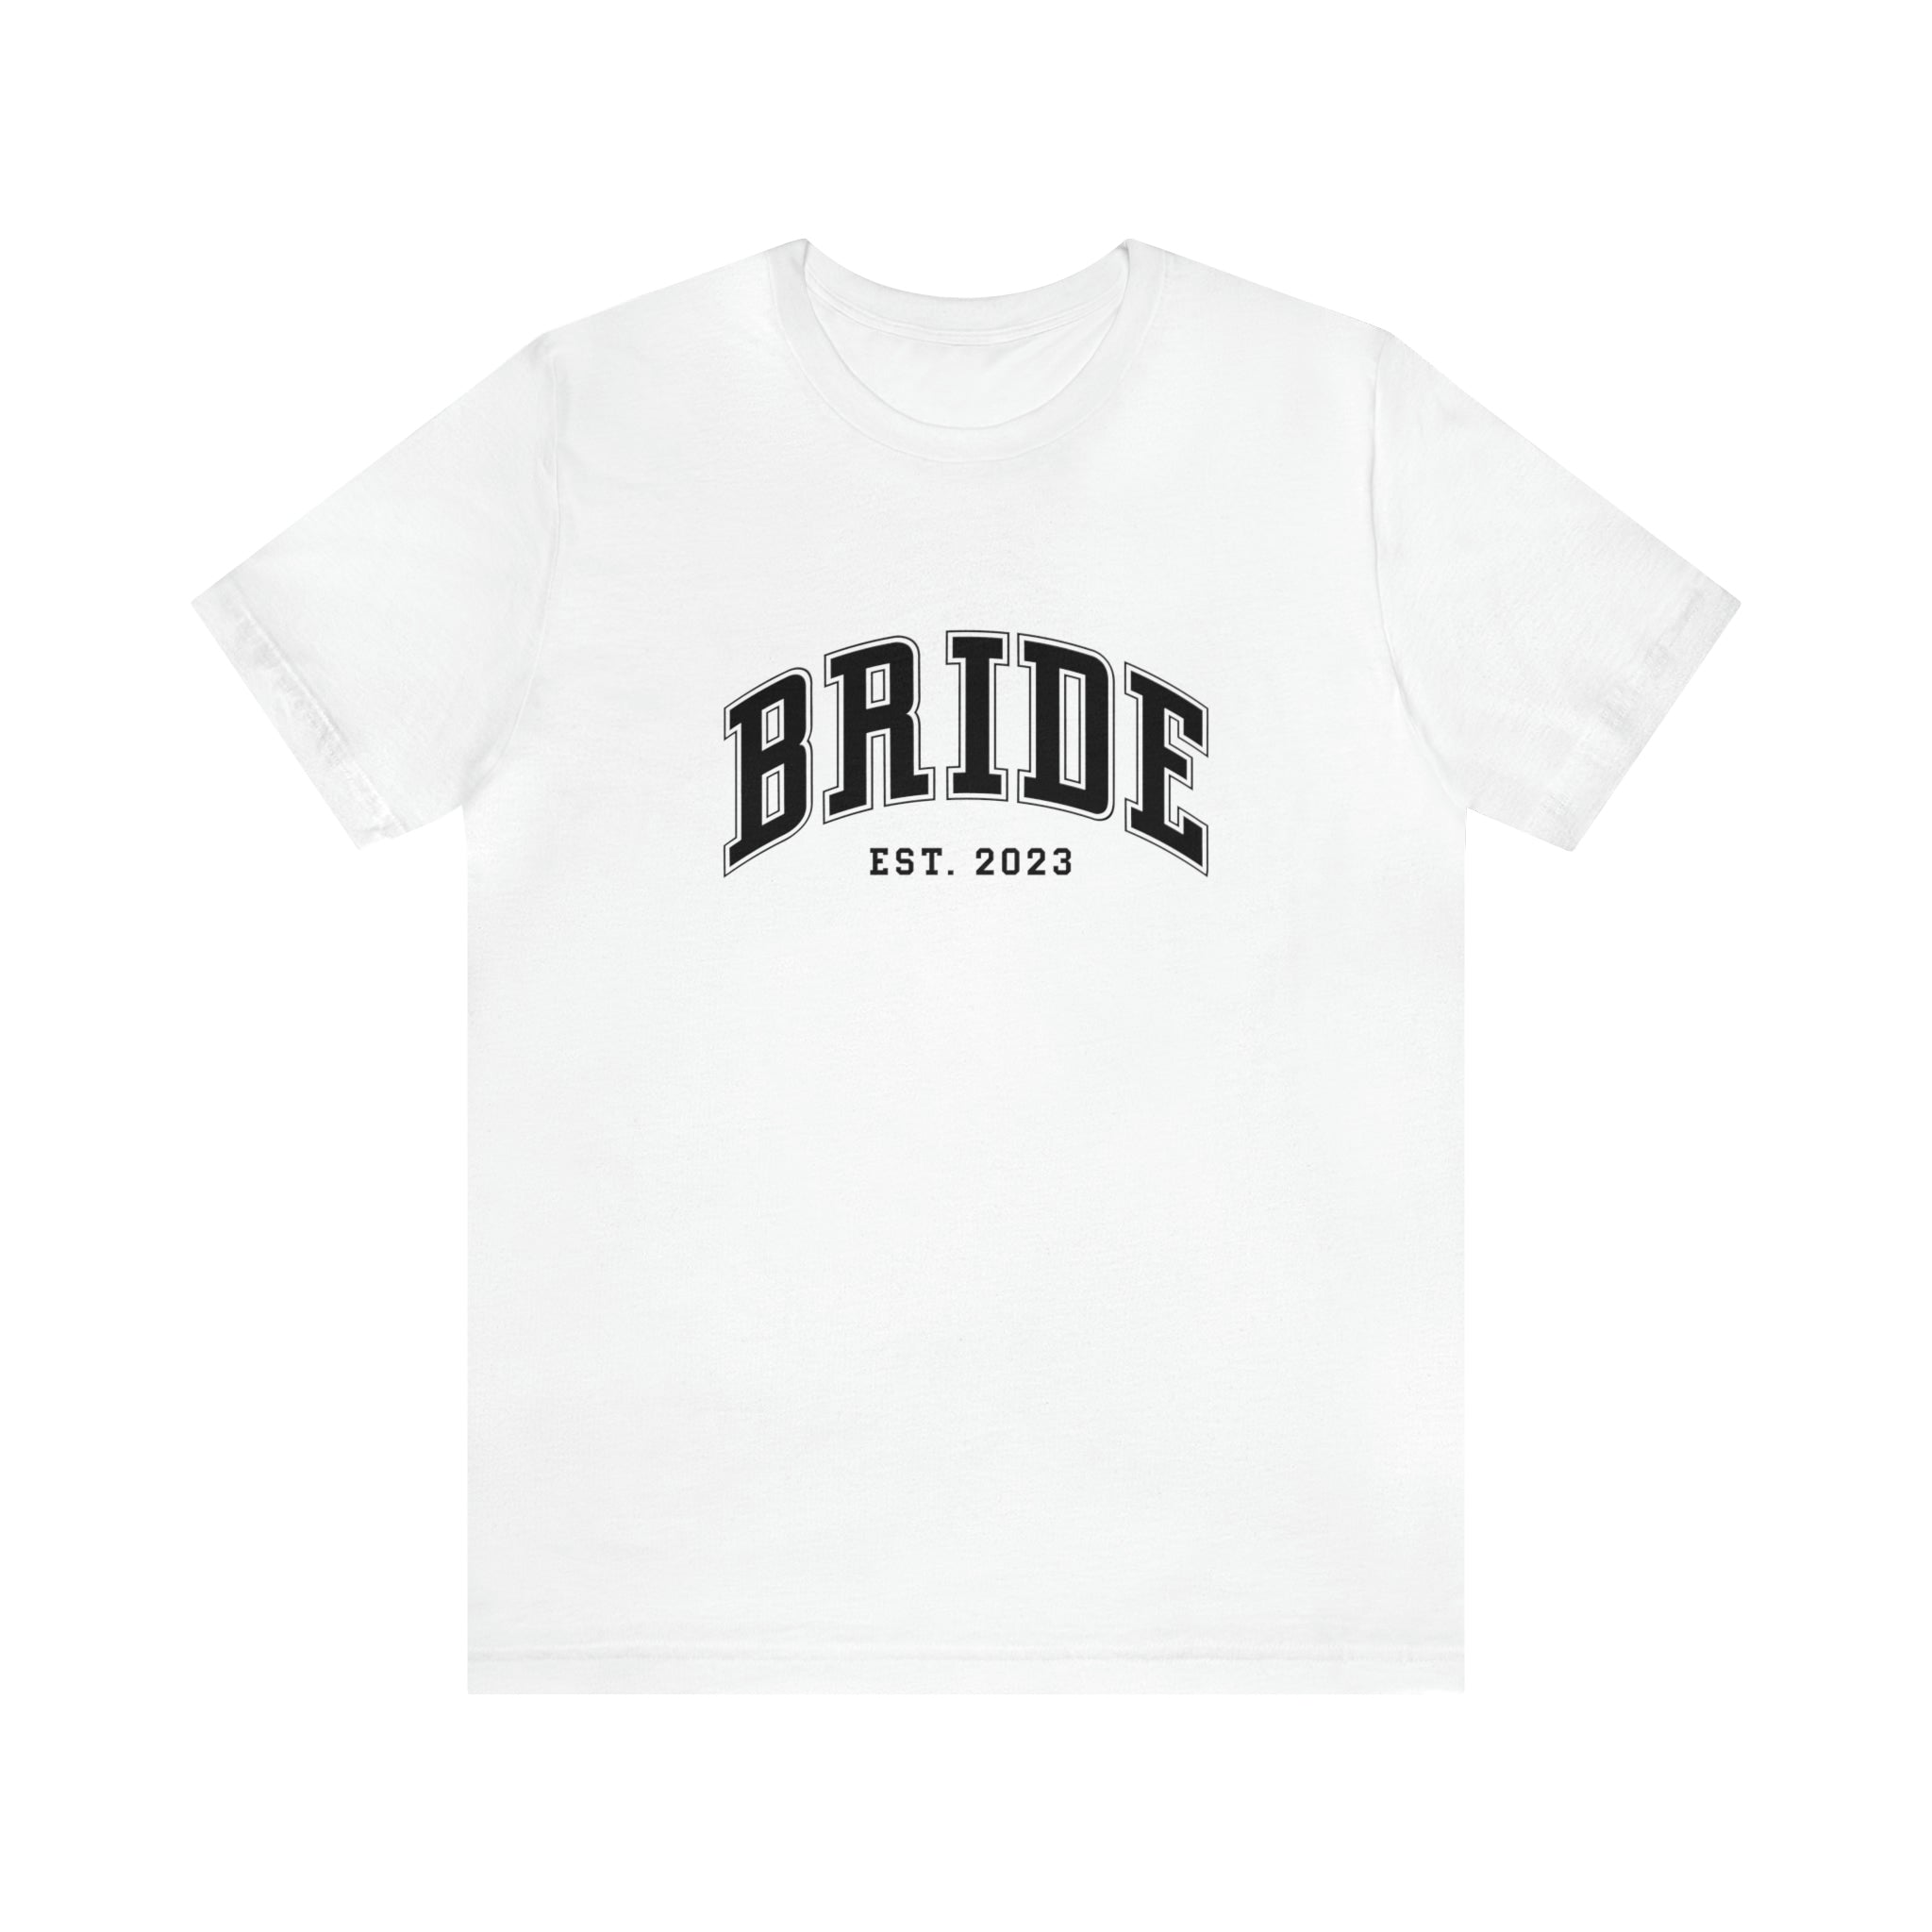 Bride & Groom Est. 2023 Bundle